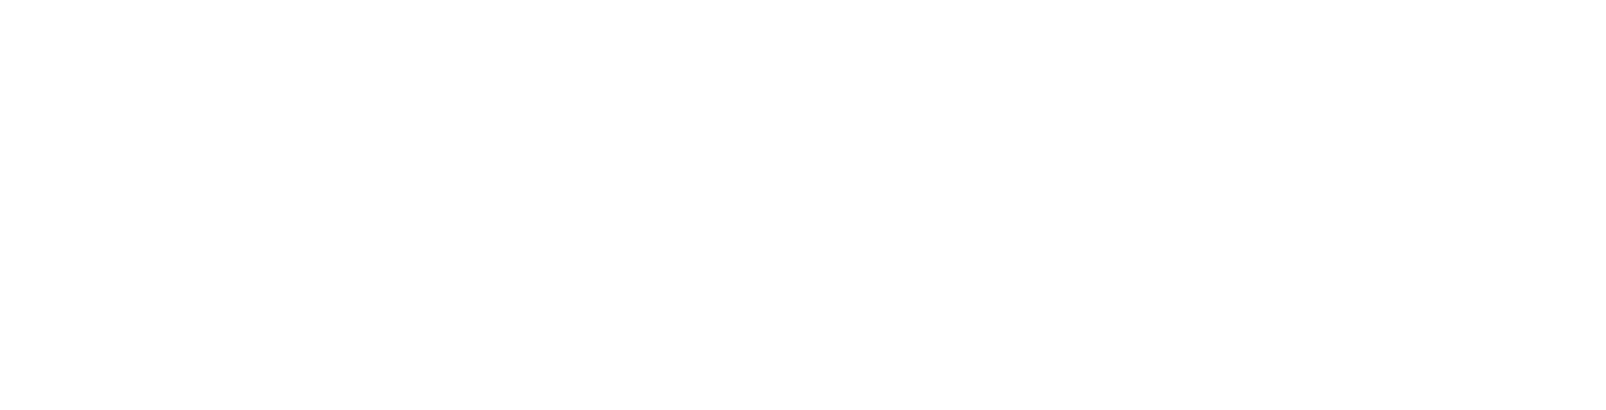 Keywords Studios logo large for dark backgrounds (transparent PNG)